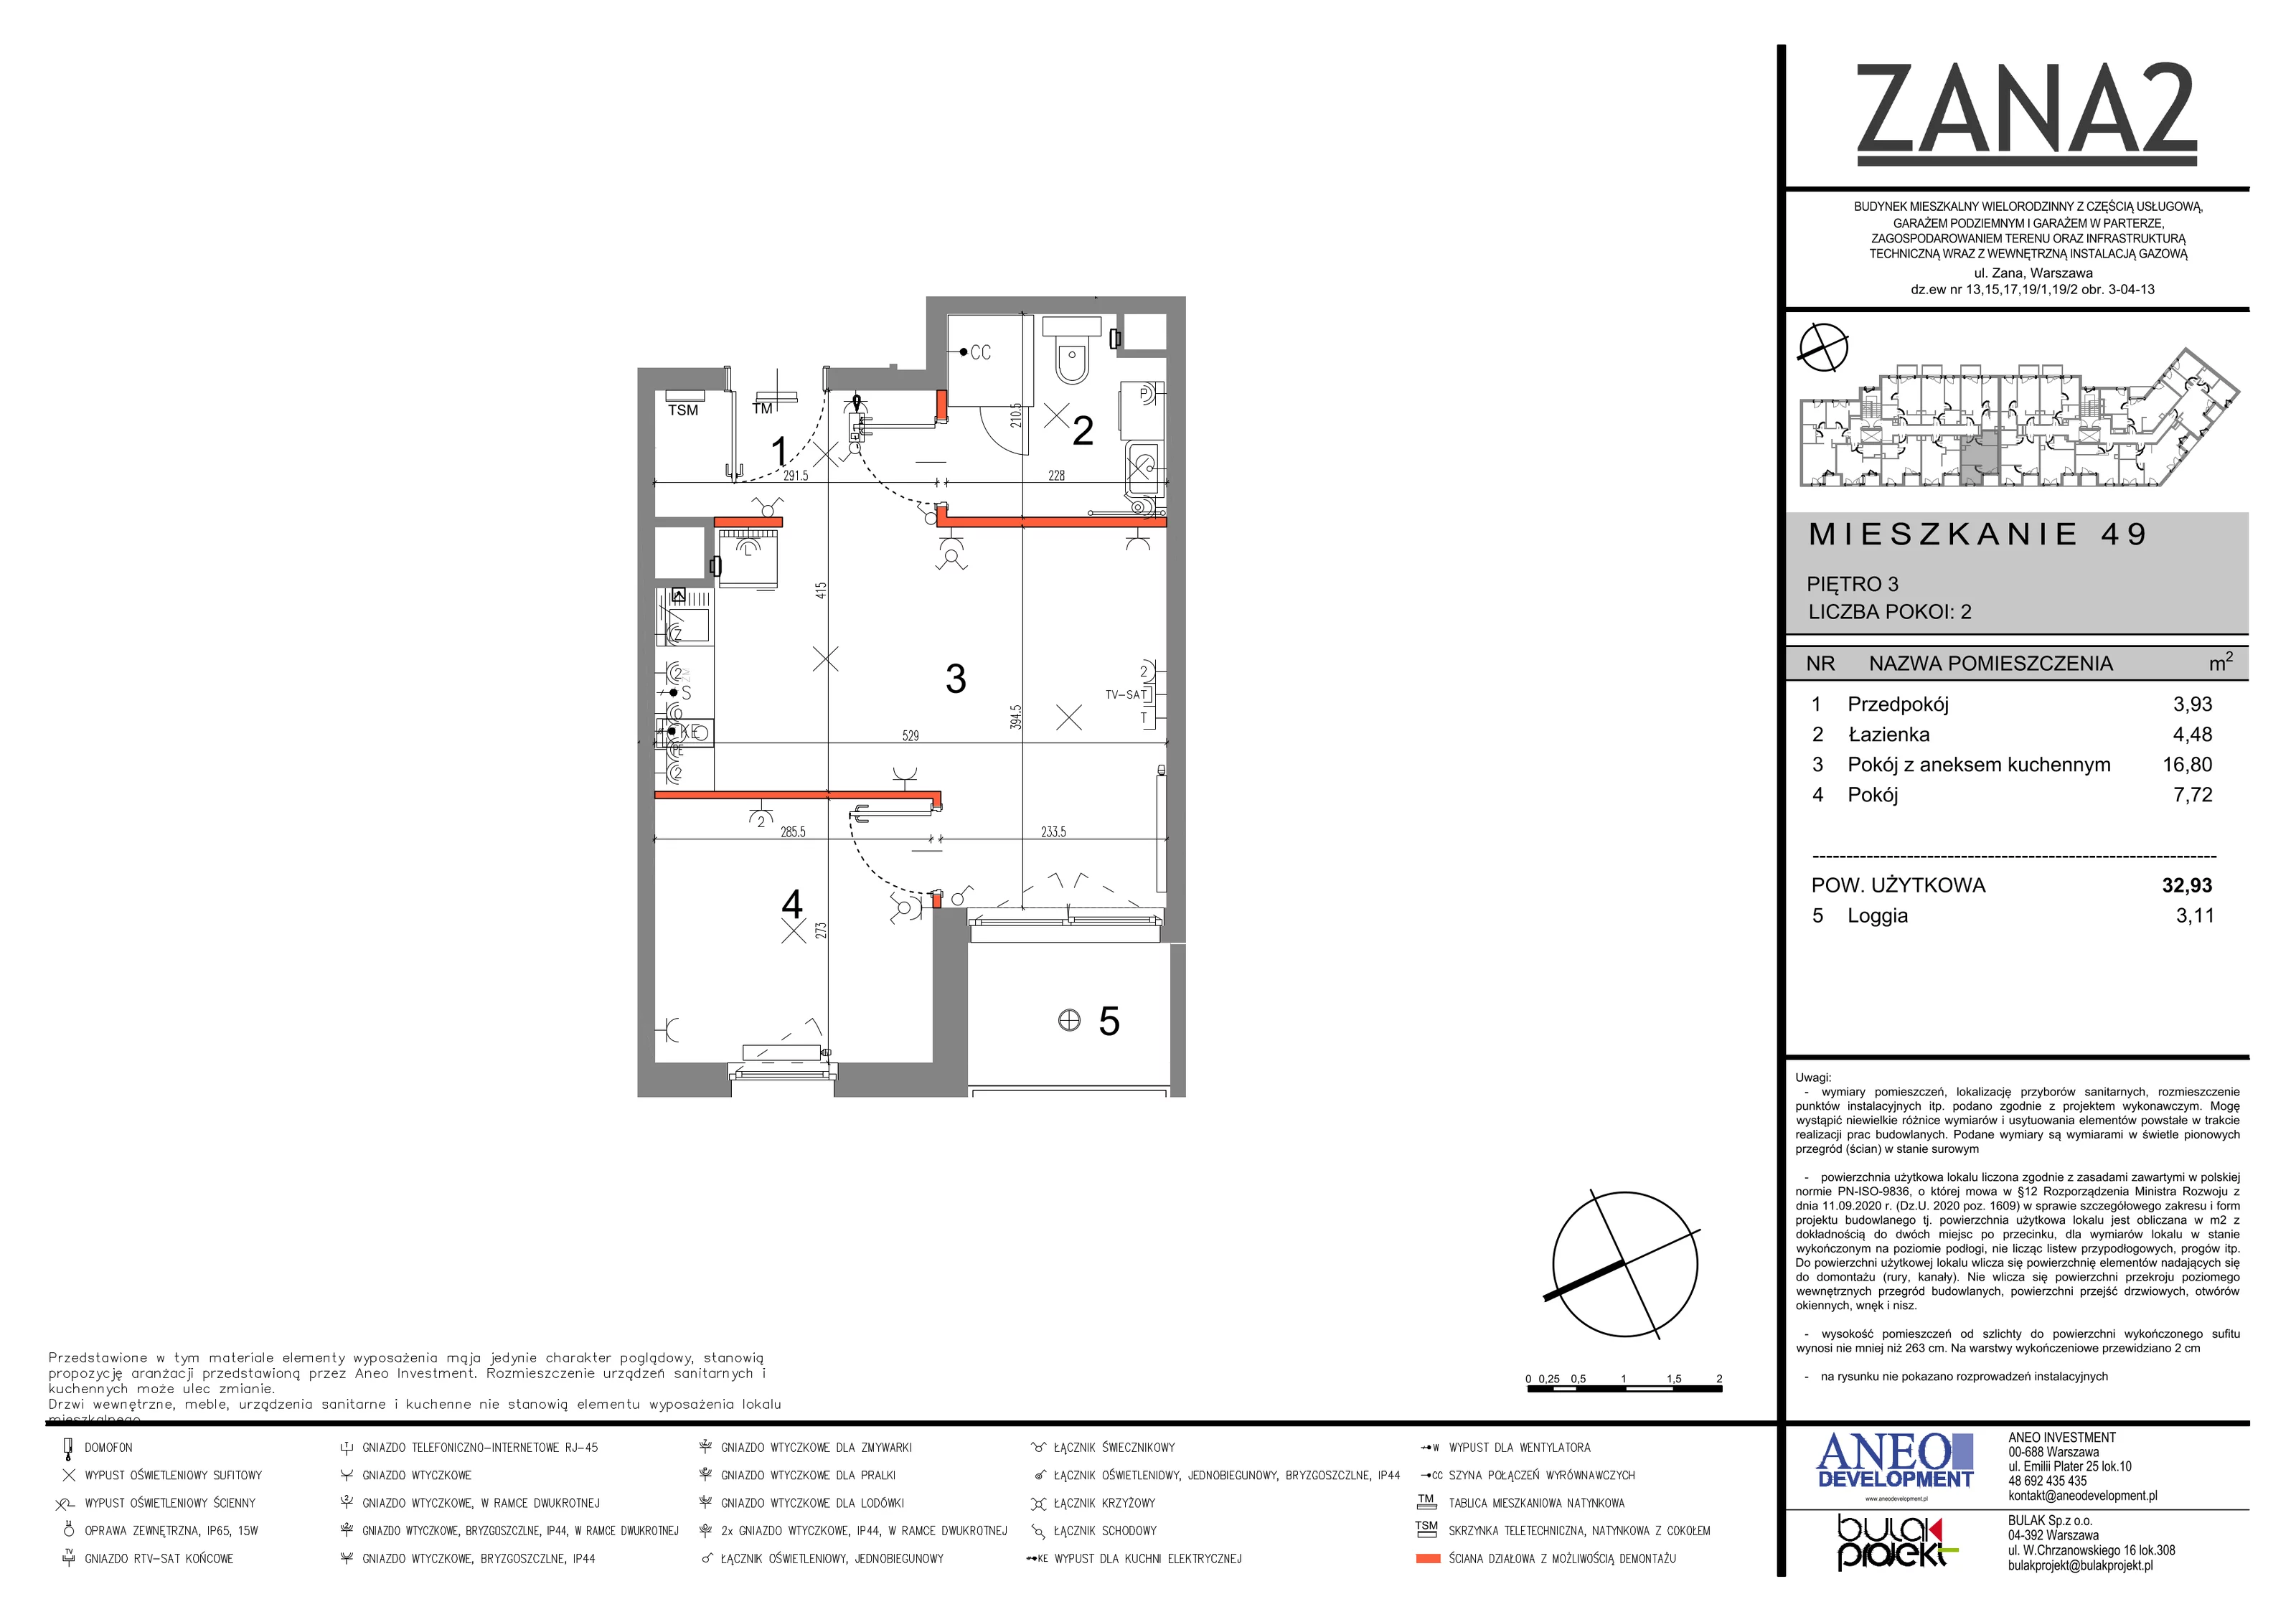 Mieszkanie 32,40 m², piętro 3, oferta nr 49, Zana 2, Warszawa, Praga Południe, Gocławek, ul. Tomasza Zana